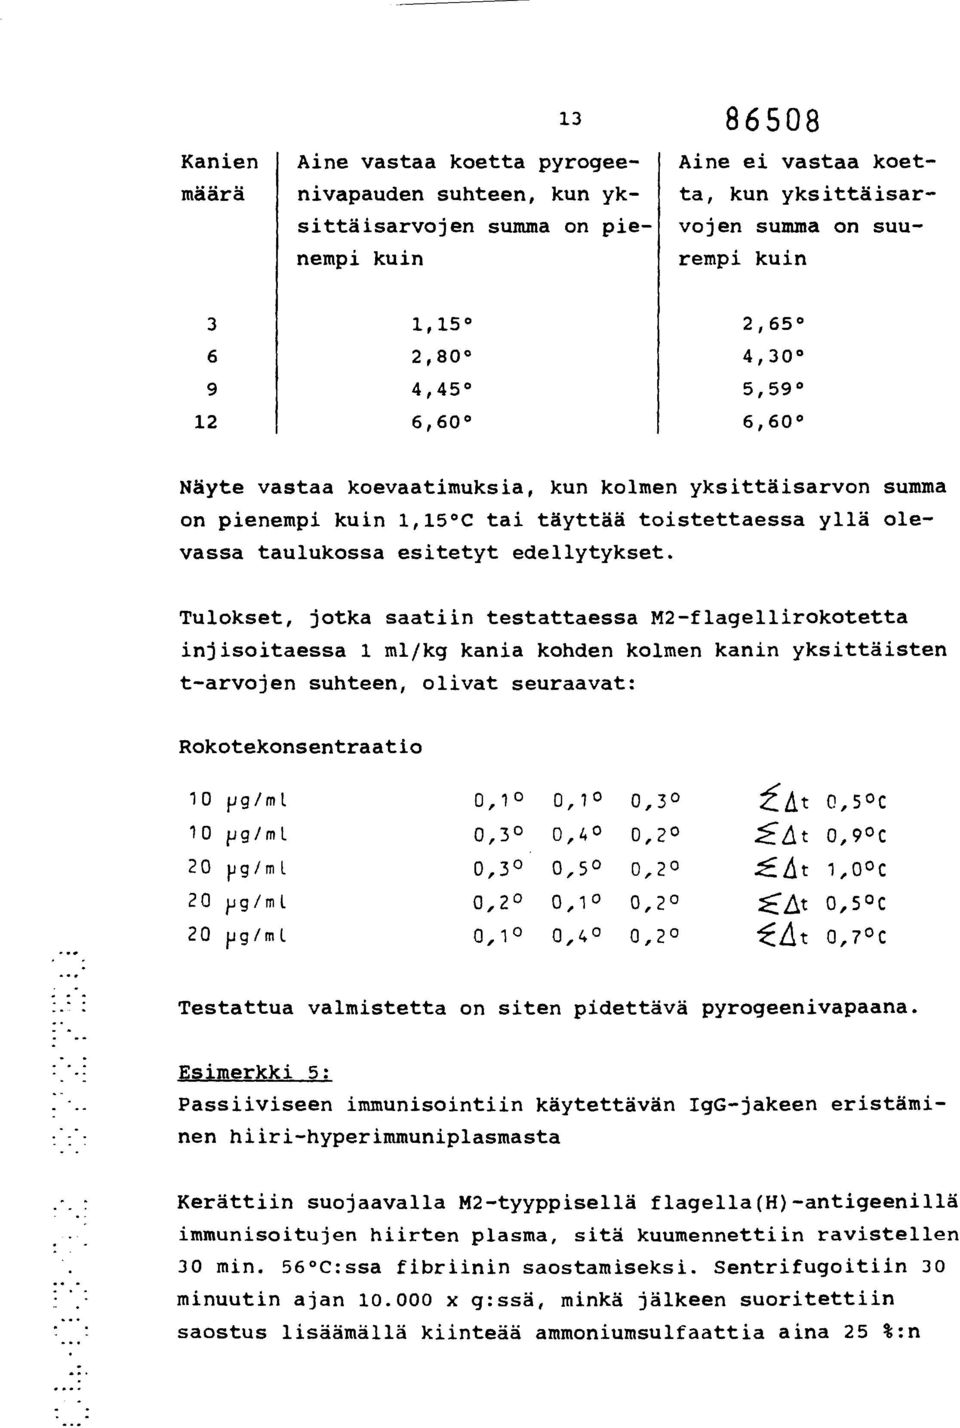 Tulokset, jotka saatiin testattaessa M2flagellirokotetta injisoitaessa 1 ml/kg kania kohden kolmen kanin yksittäisten tarvojen suhteen, olivat seuraavat: Rokotekonsentraatio 10 pg/ml 0,1 0,1 0,3 0,5